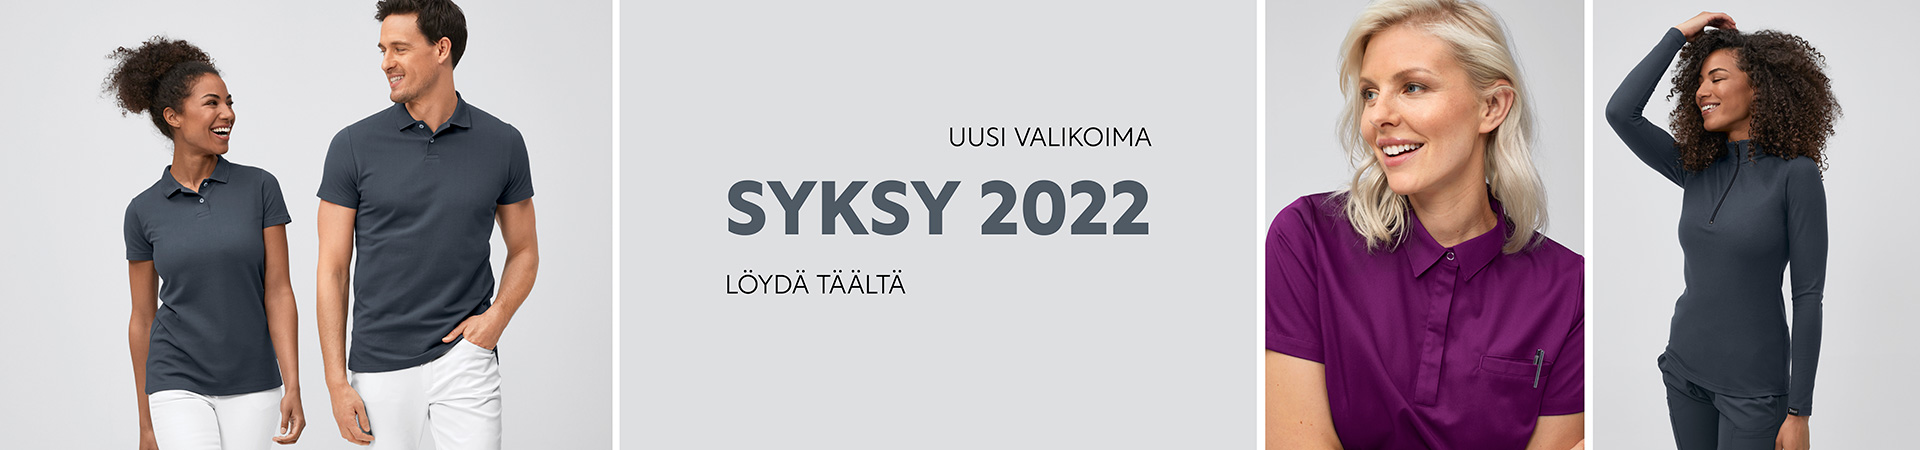 Syksy 2022